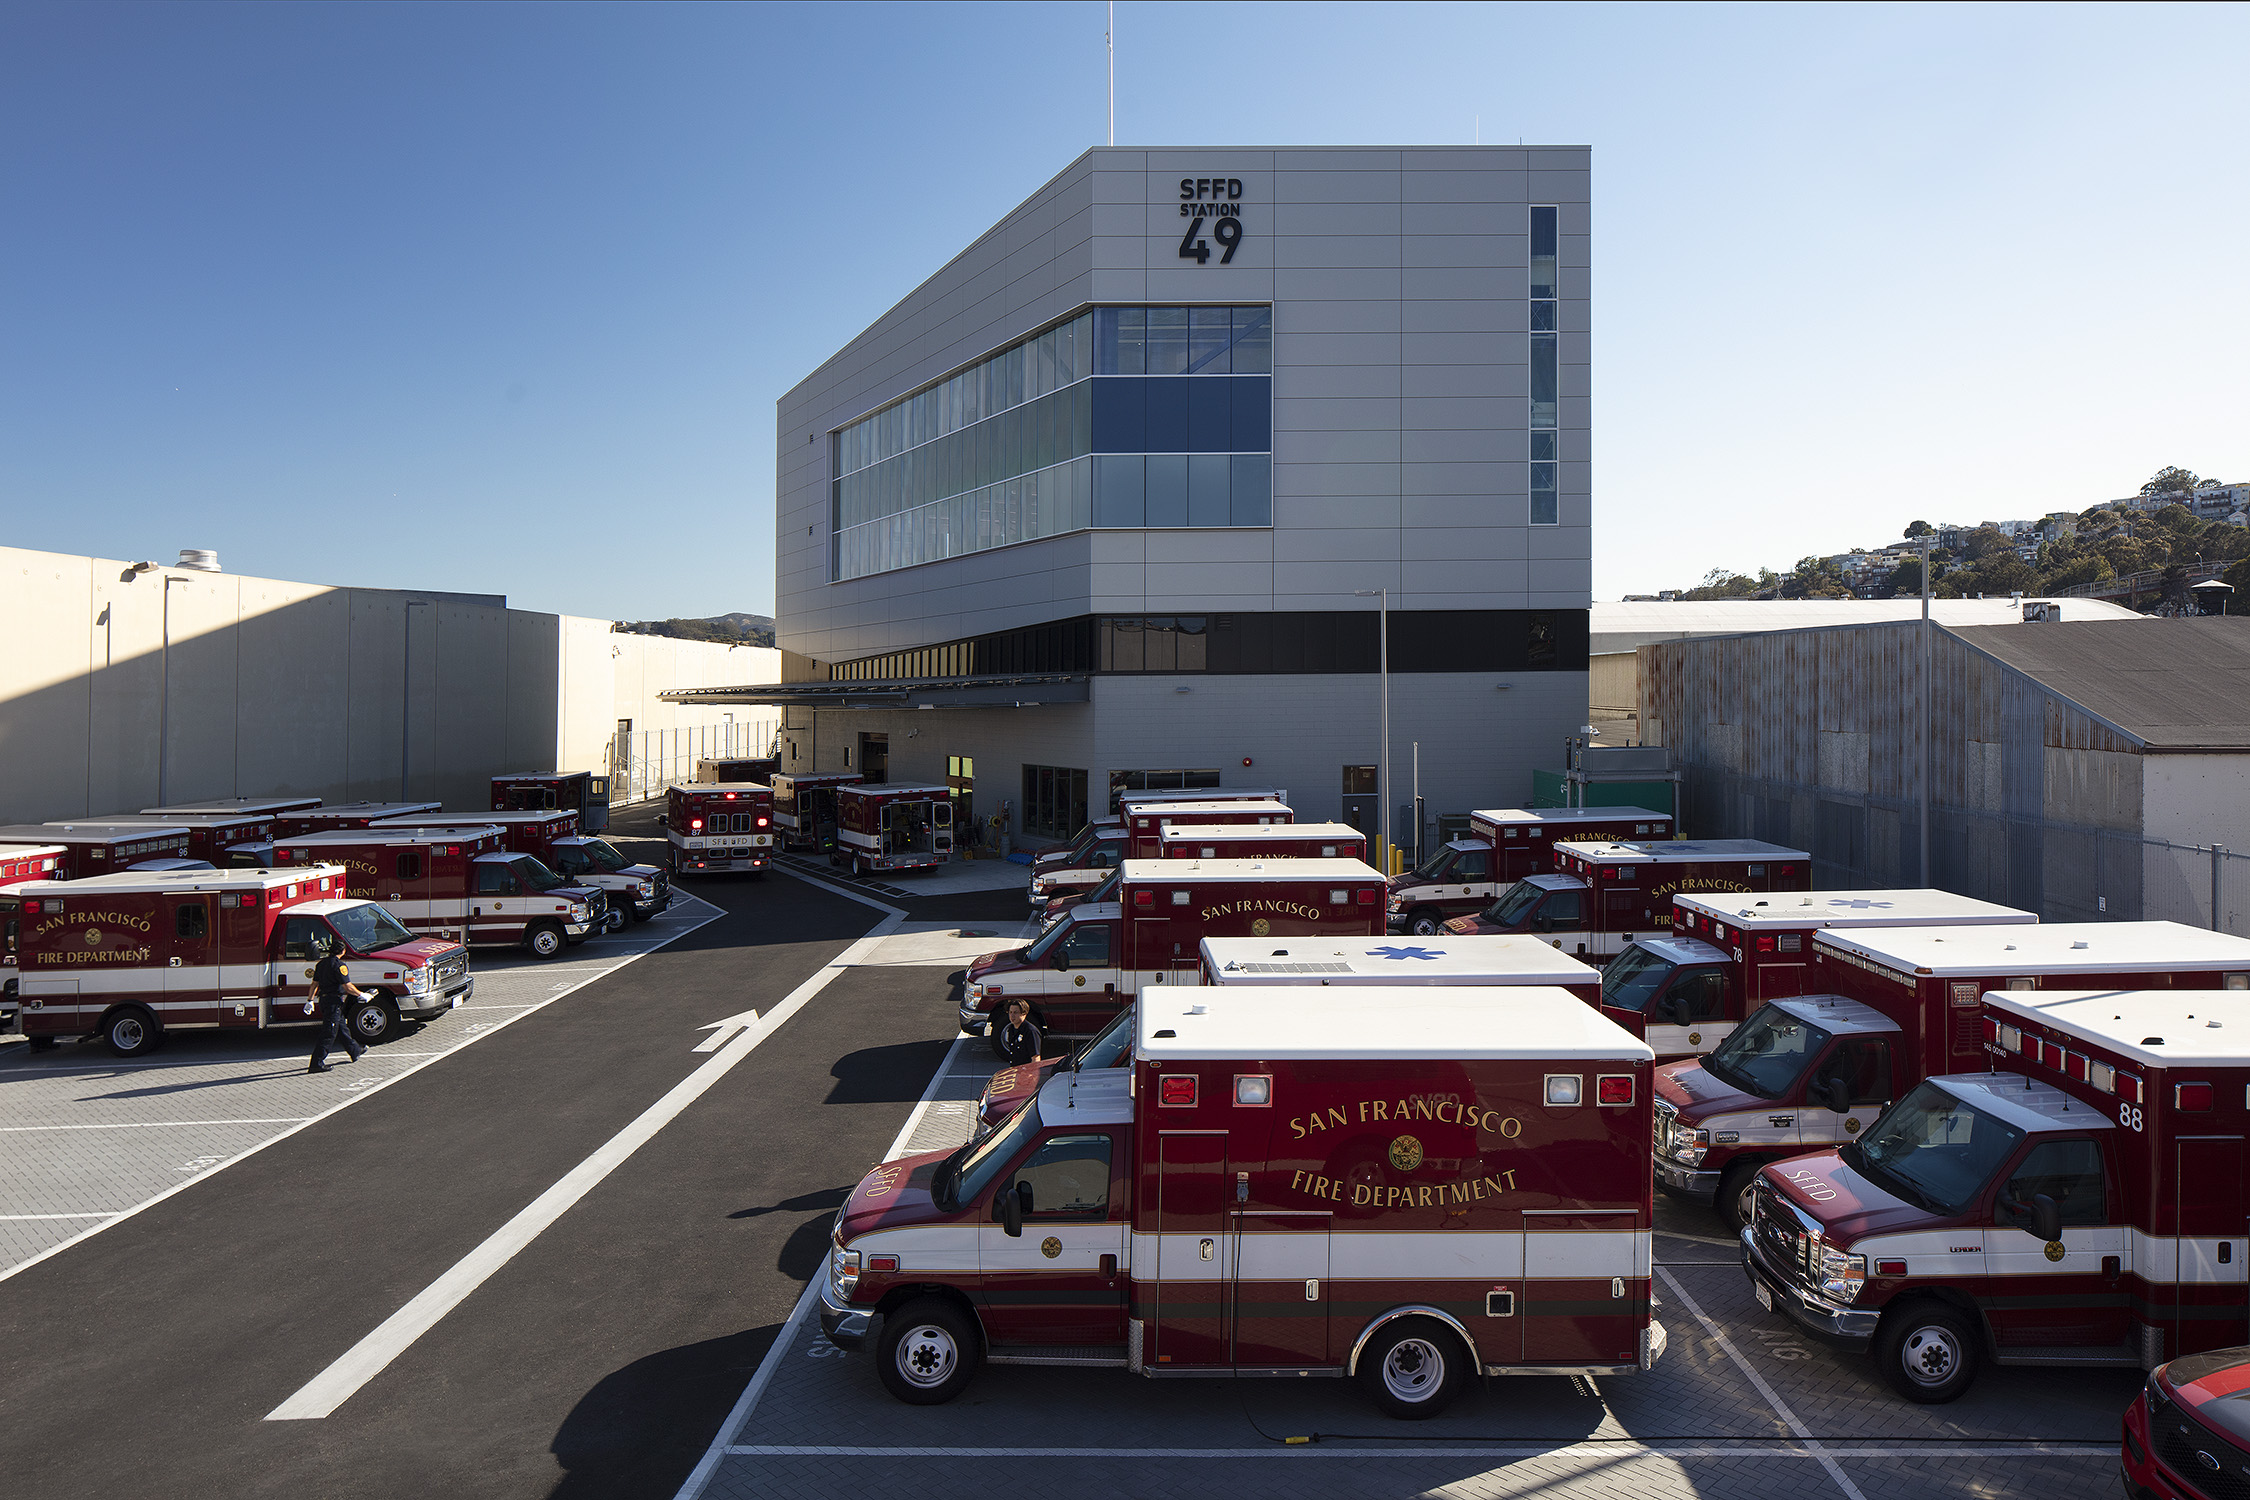 Fire Station 49 and Ambulance Yard